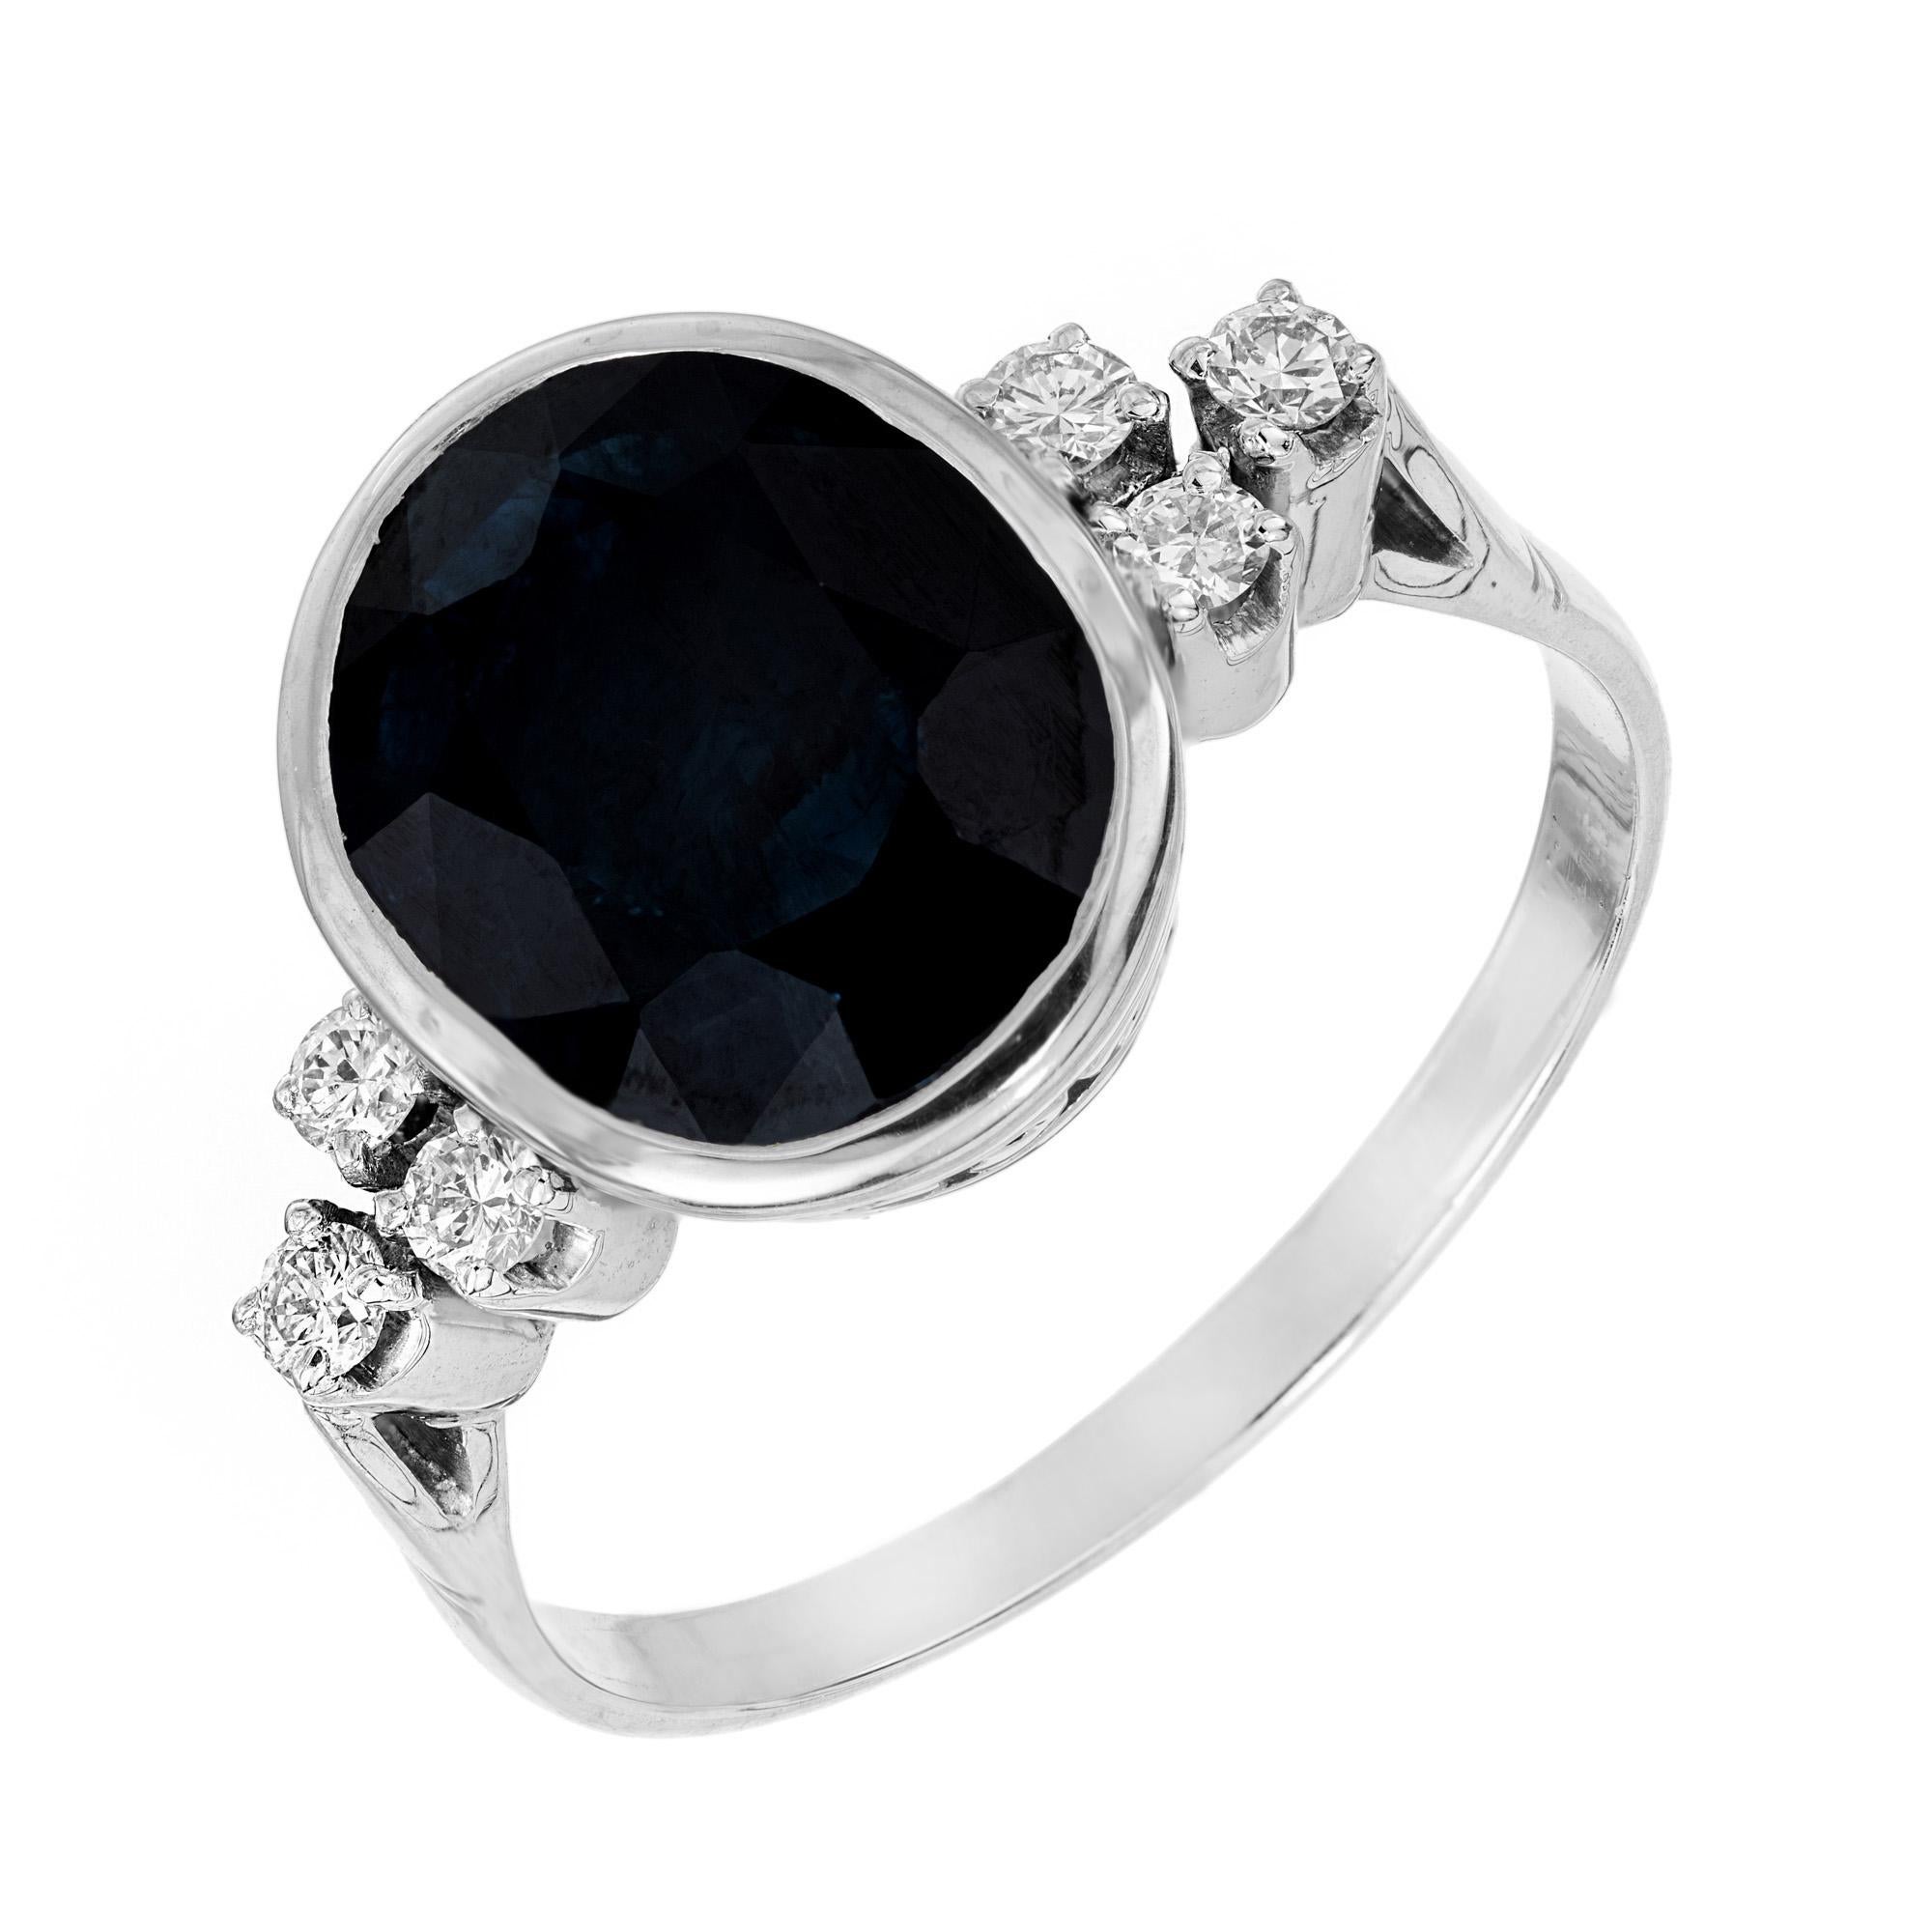 Merveilleuse bague de fiançailles ovale de 5,51 carats certifiée saphir bleu profond naturel et diamant. Montée dans sa lunette d'origine des années 1950 en platine avec une couronne filigranée. Le saphir est rehaussé de 3 diamants ronds de taille